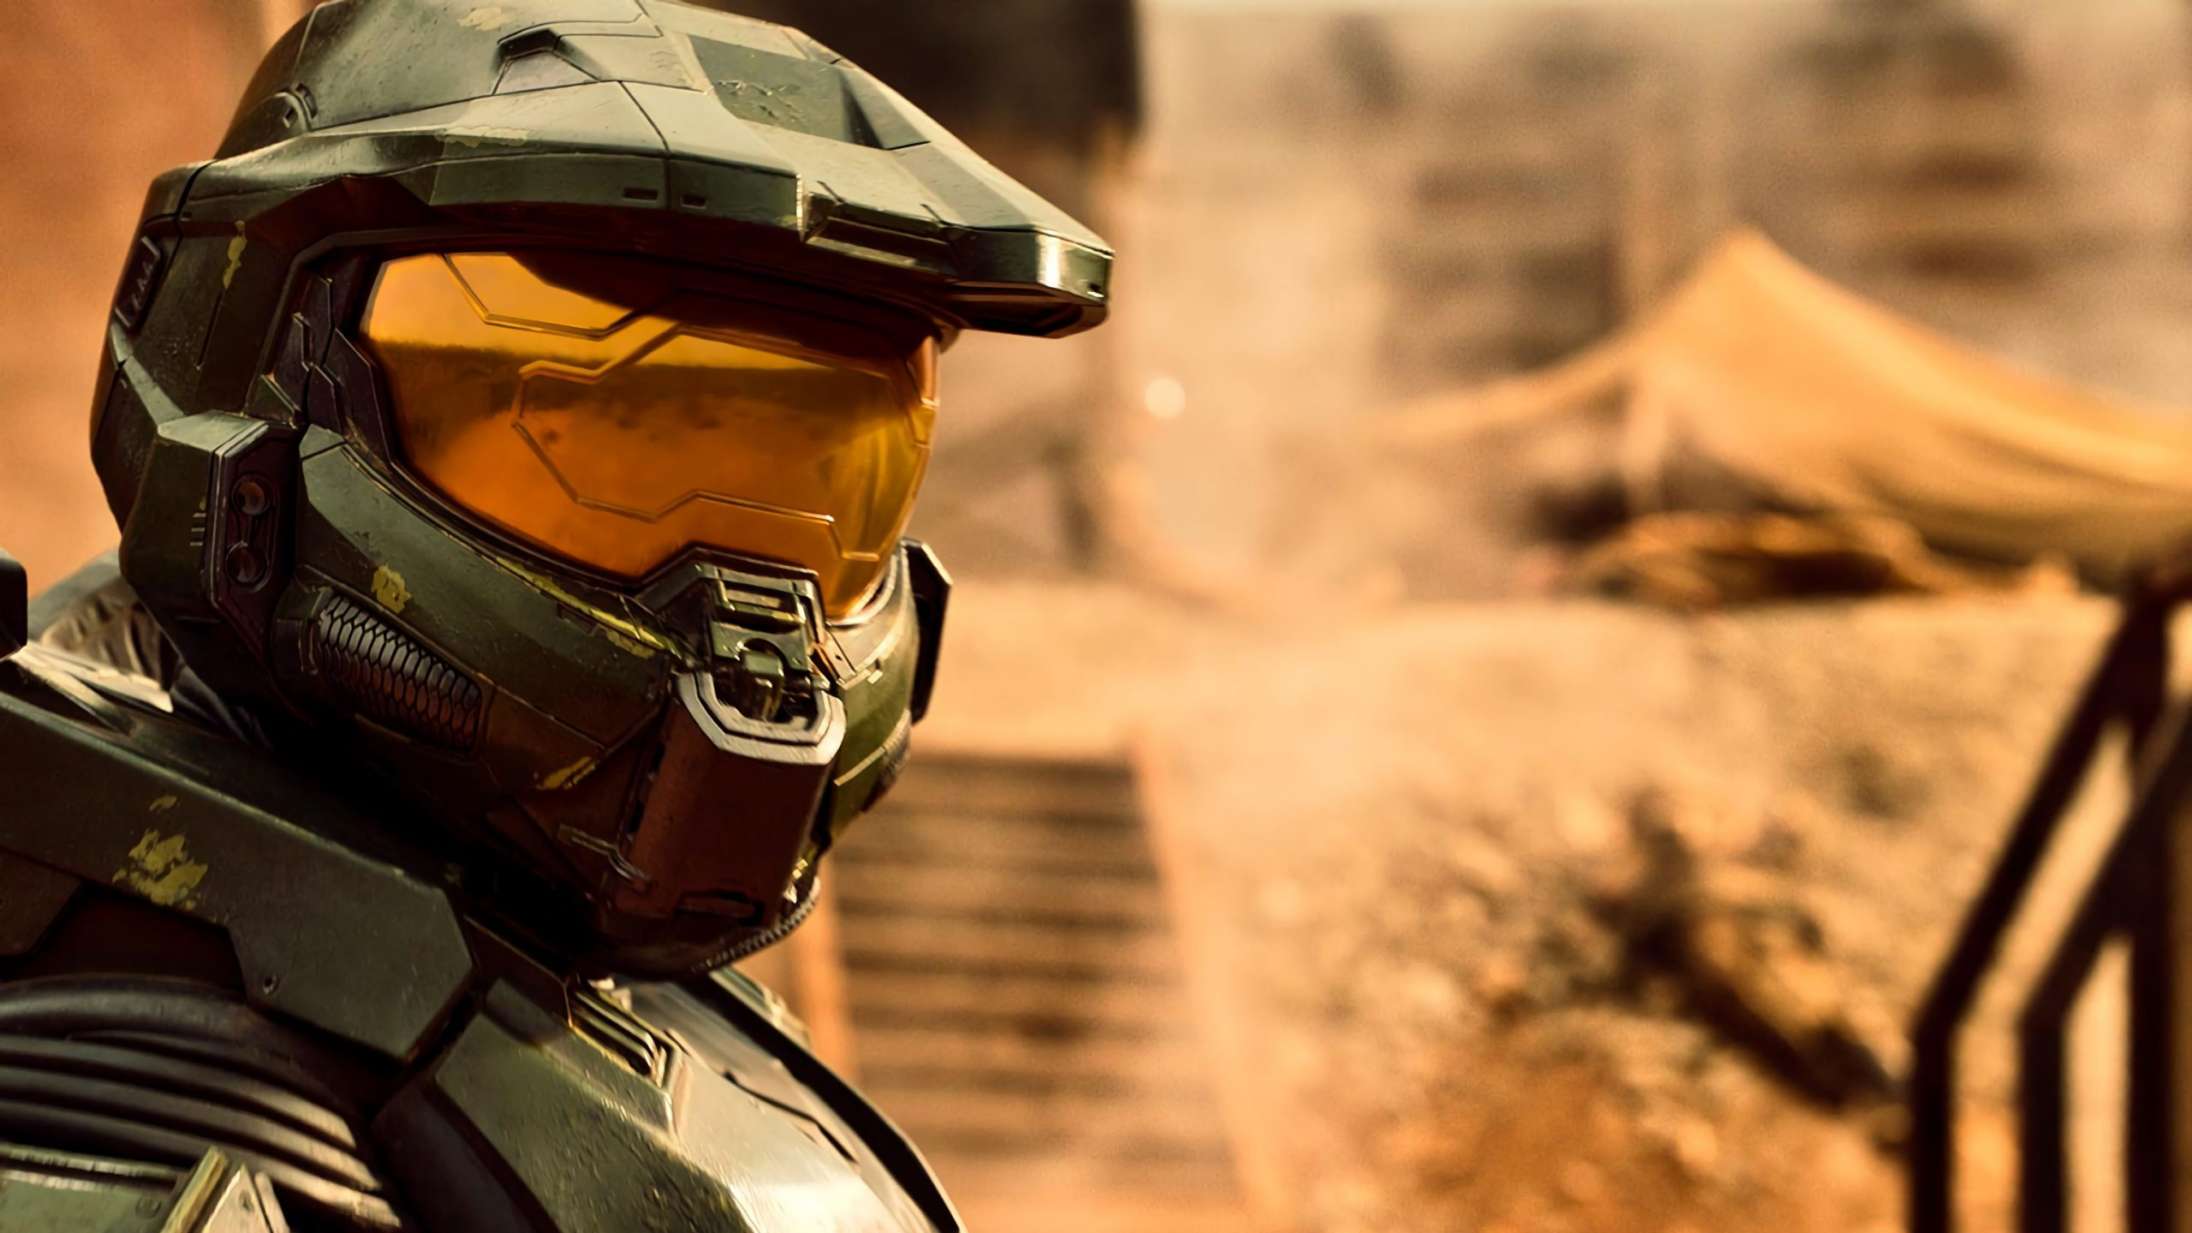 Den længe ventede ‘Halo’-serie får premieredato – se den højspændte trailer